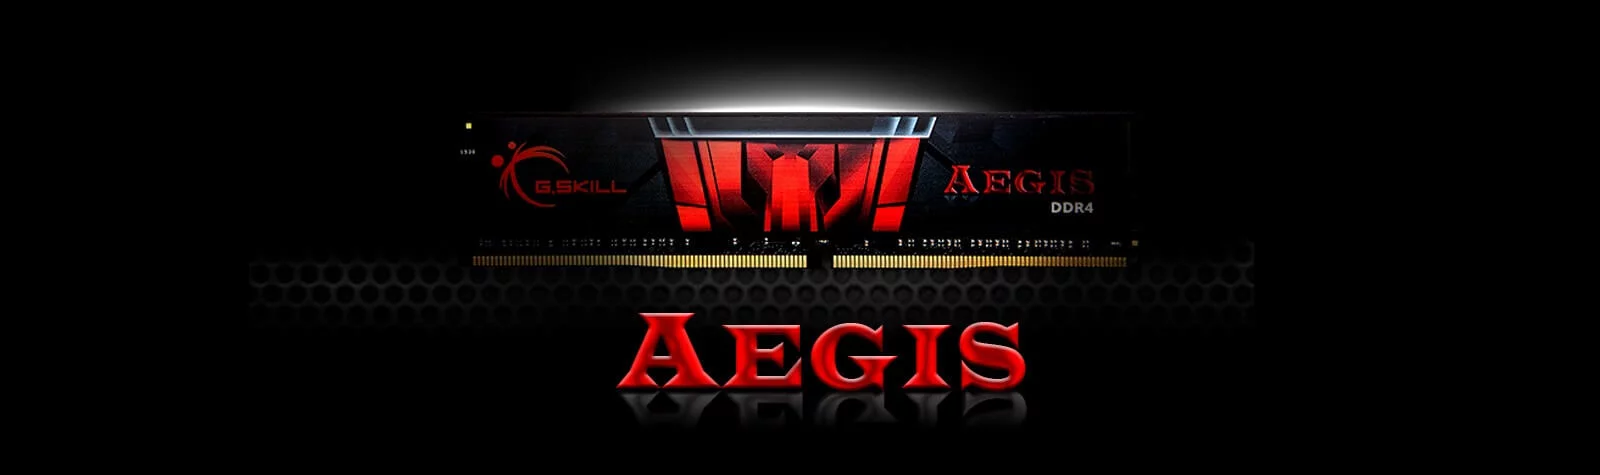 1. Ram G.Skill AEGIS F4-3000C16D-16GISB 16GB (8GBx2) DDR4 3000MHz _songphuong.vn (1)